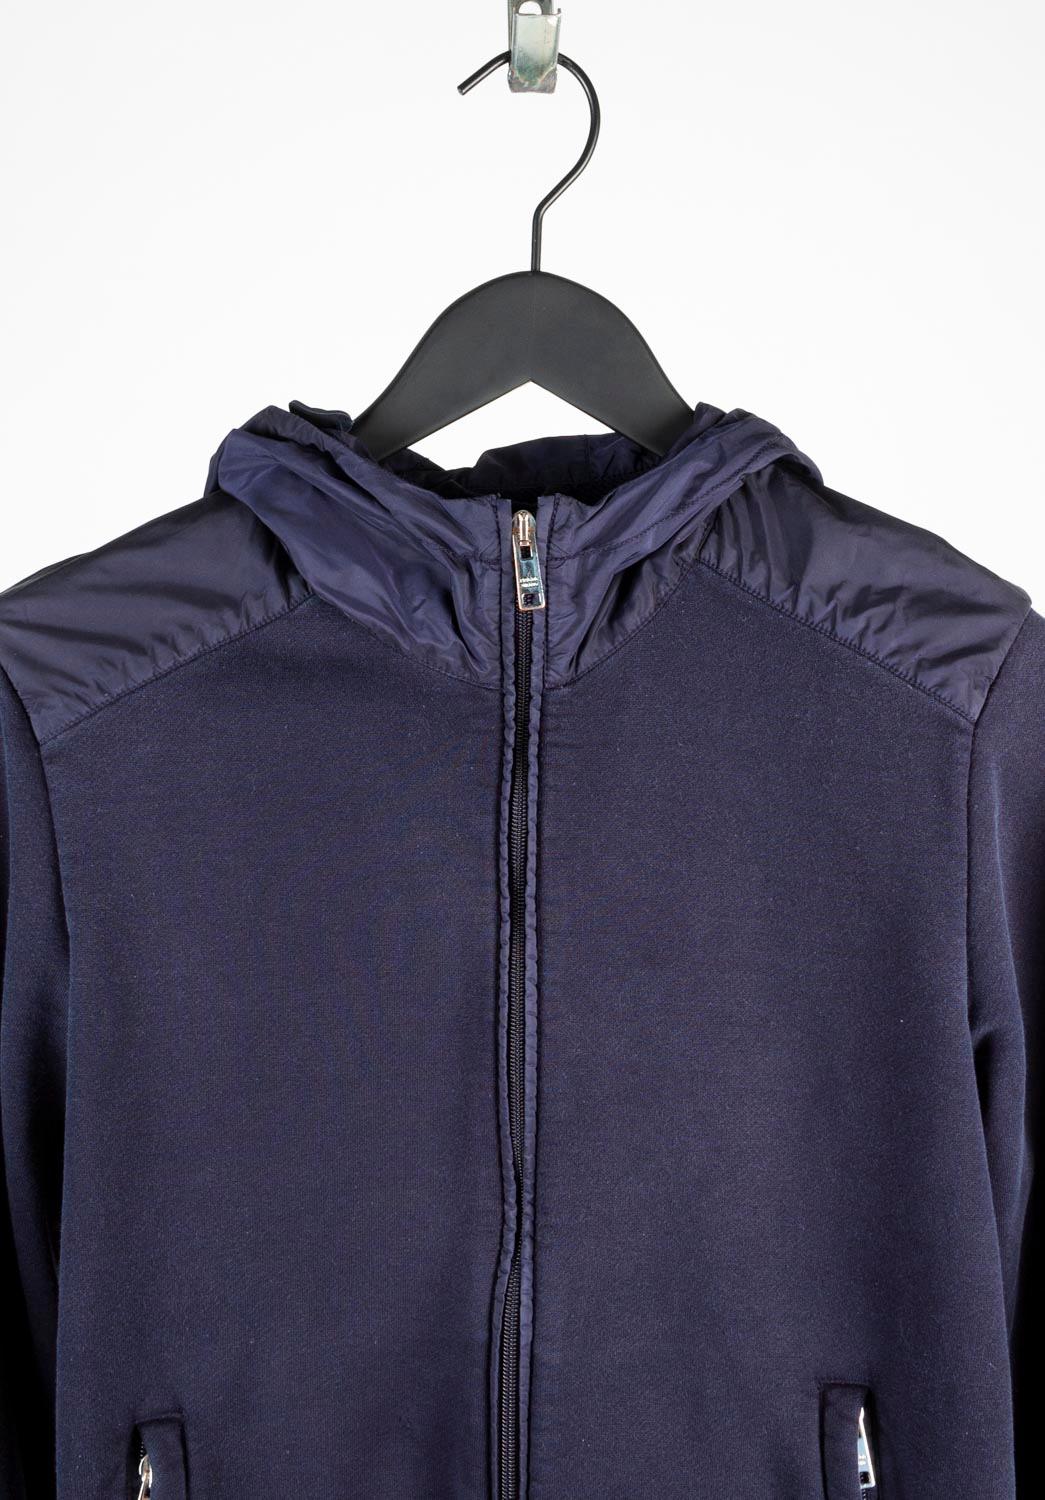 100% authentique Prada Hooded Jacket Jumper, S662
Couleur : bleu
(La couleur réelle peut varier légèrement en raison de l'interprétation individuelle de l'écran de l'ordinateur).
Matériau : 100% coton
Taille de l'étiquette : M
Cette veste est un